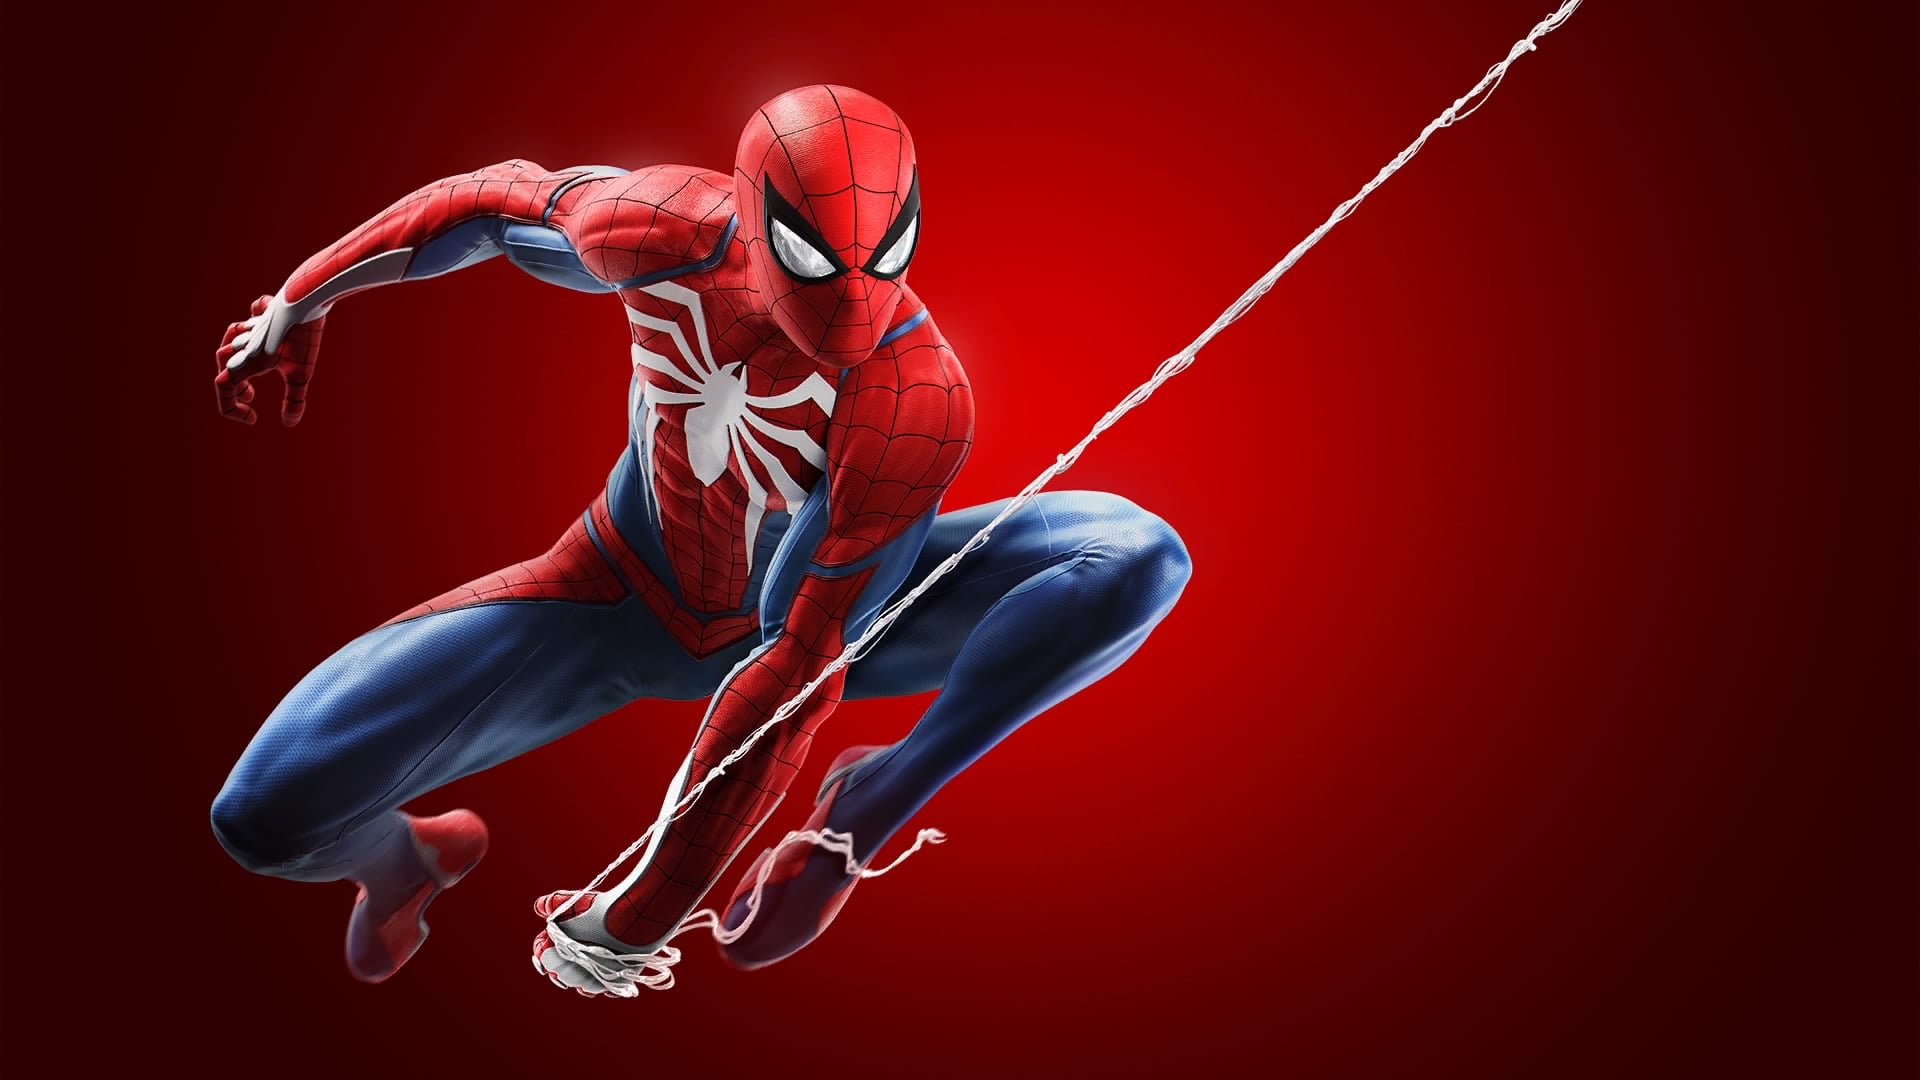 Człowiek-Pająk w najlepszym możliwym wydaniu! Recenzja gry Marvel's Spider- Man - Tabletowo